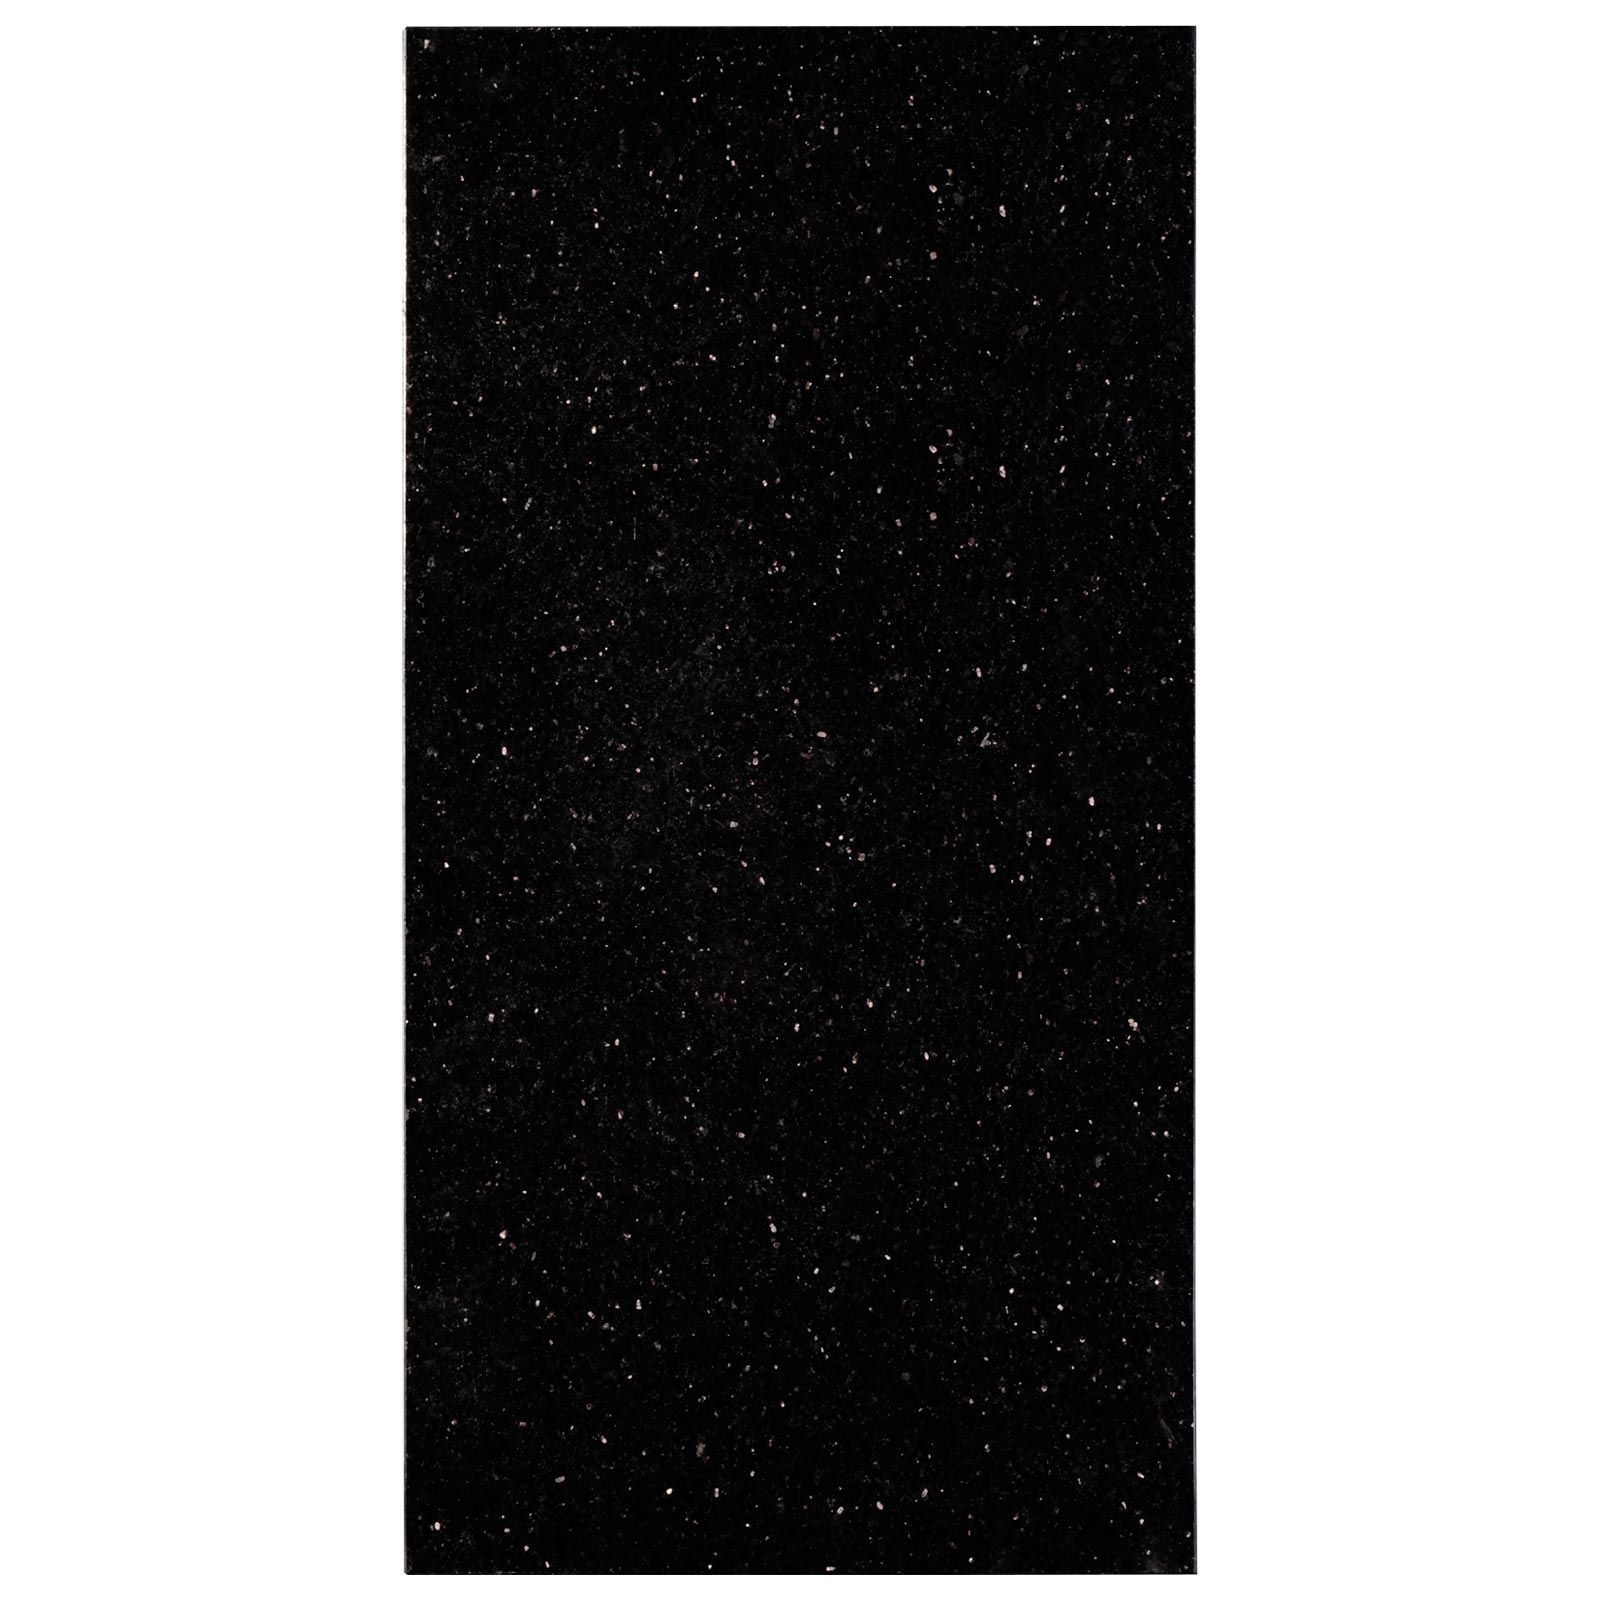 Płytki Granit Black Galaxy / Star Galaxy polerowany 61x30,5x1 cm